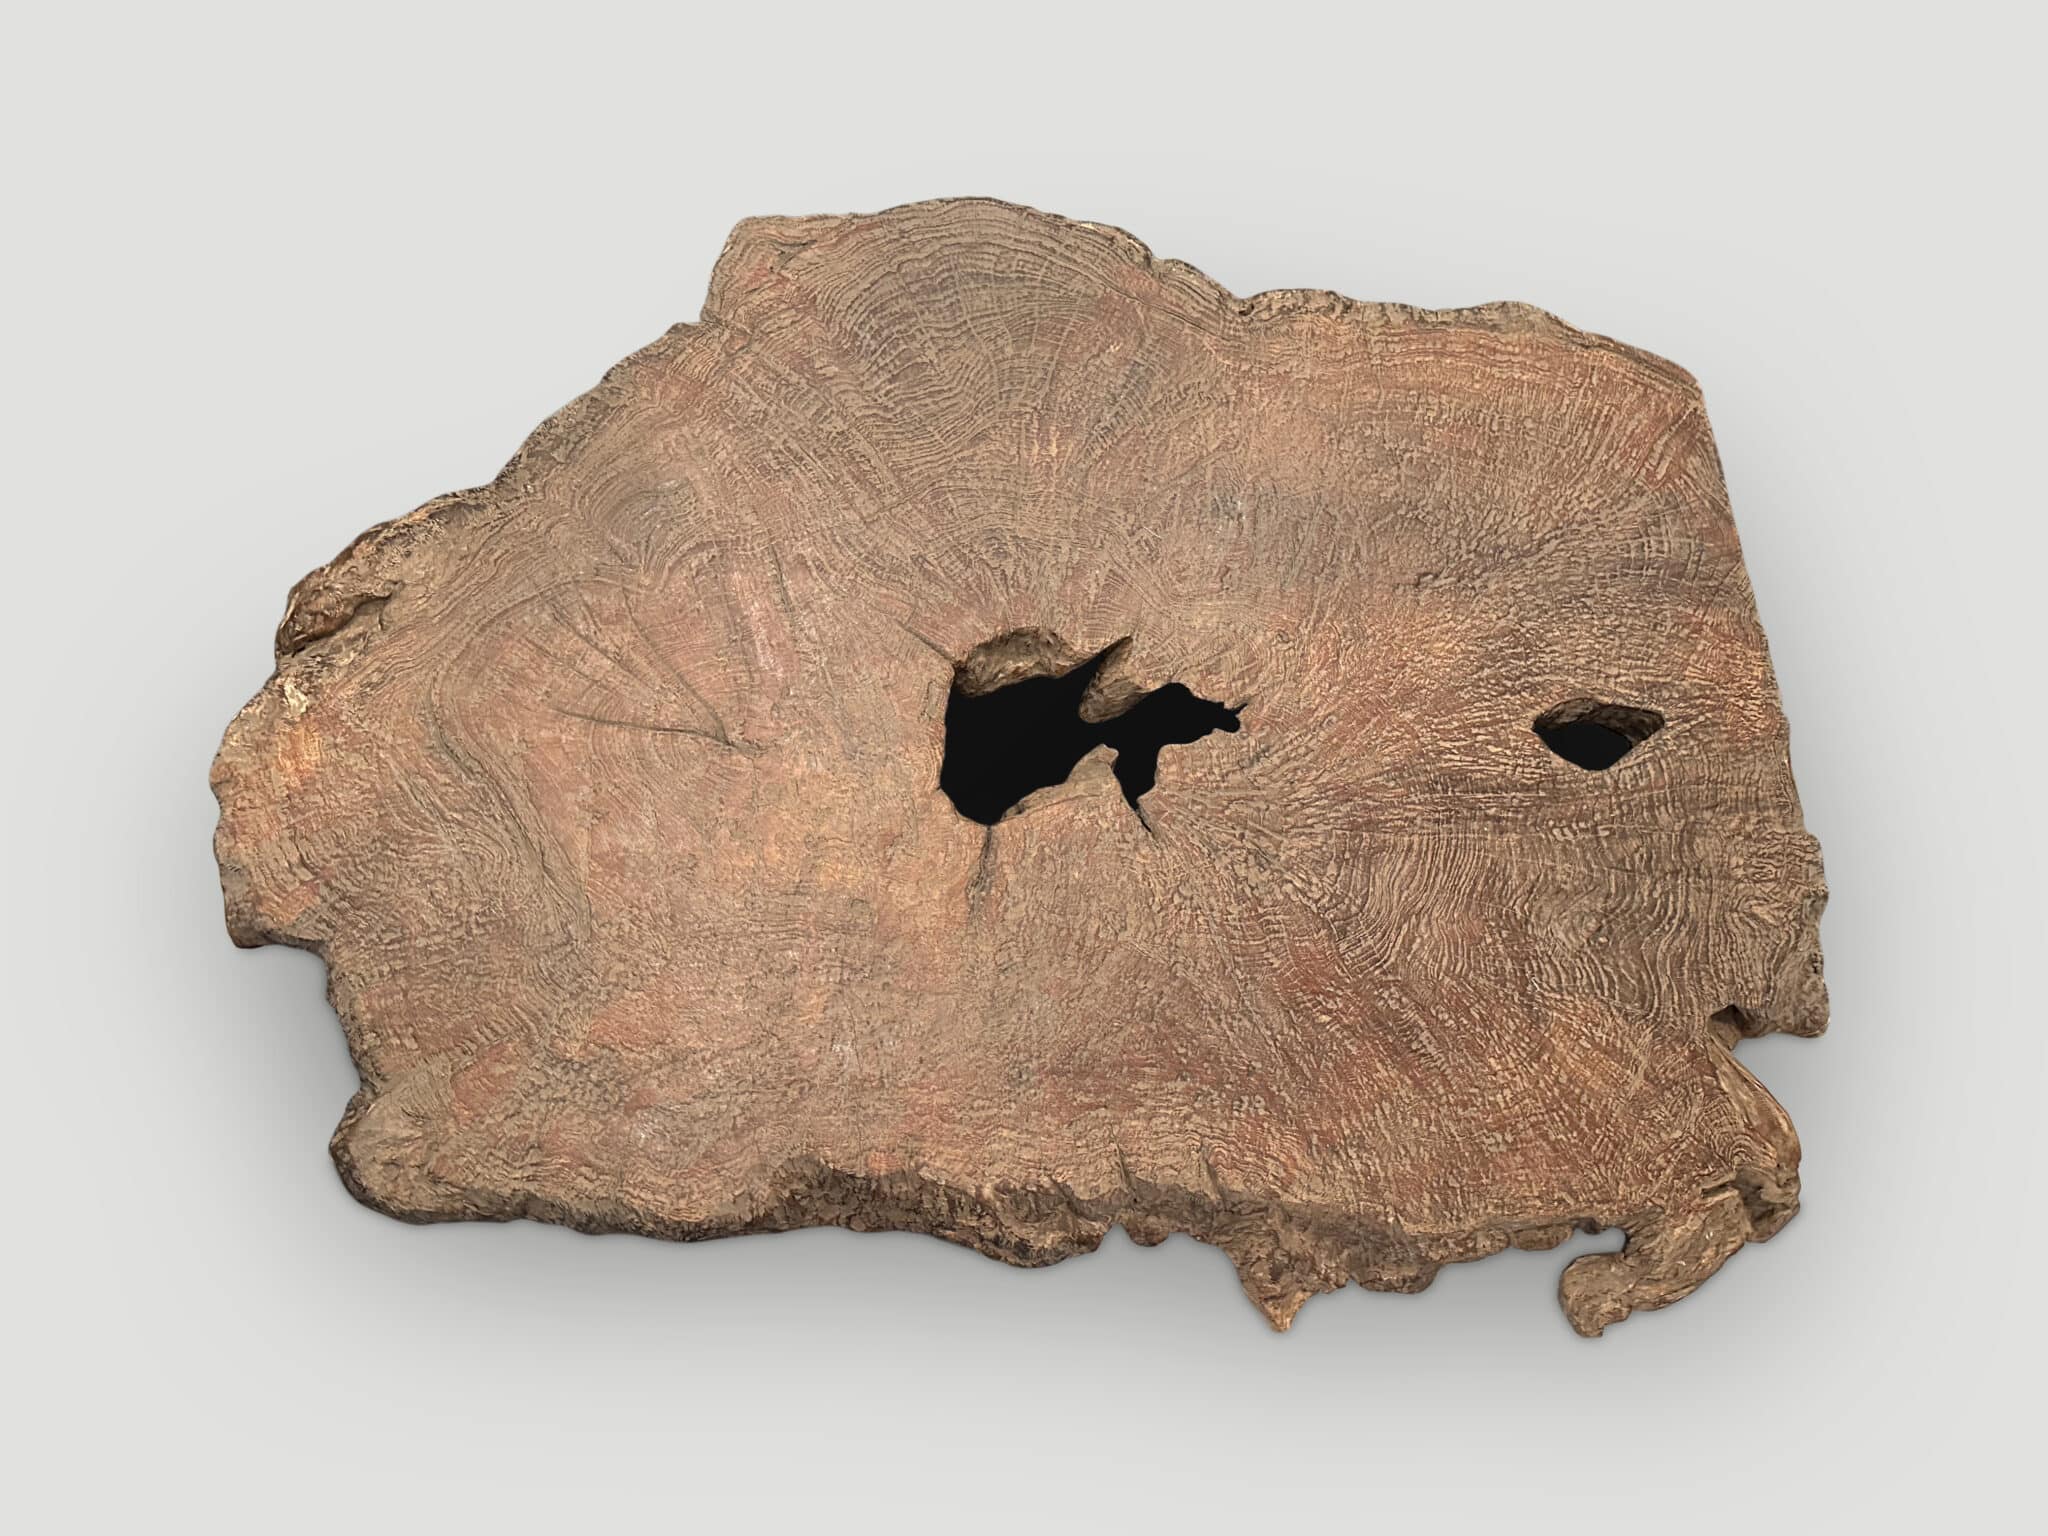 rare teak wood slab or table top